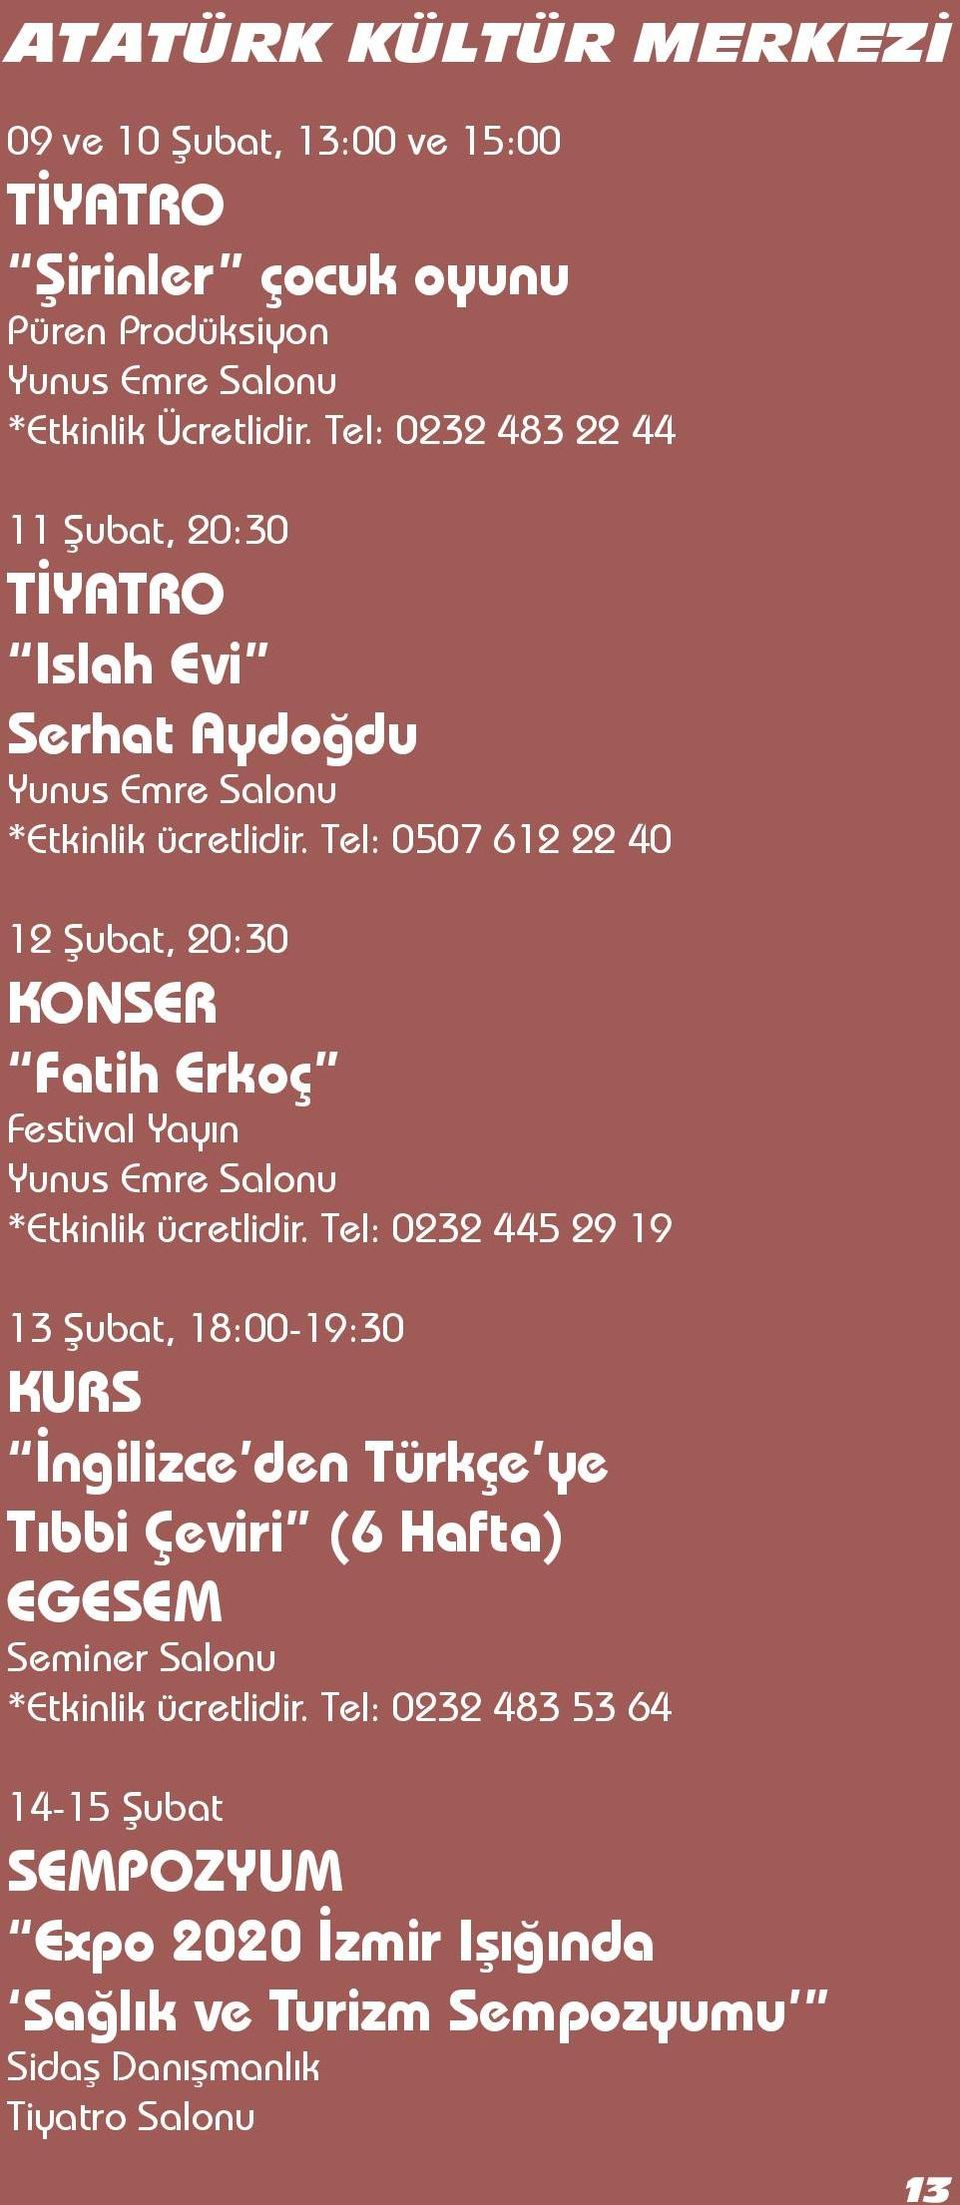 Tel: 0507 612 22 40 12 Şubat, 20:30 KONSER Fatih Erkoç Festival Yayın Yunus Emre Salonu *Etkinlik ücretlidir.